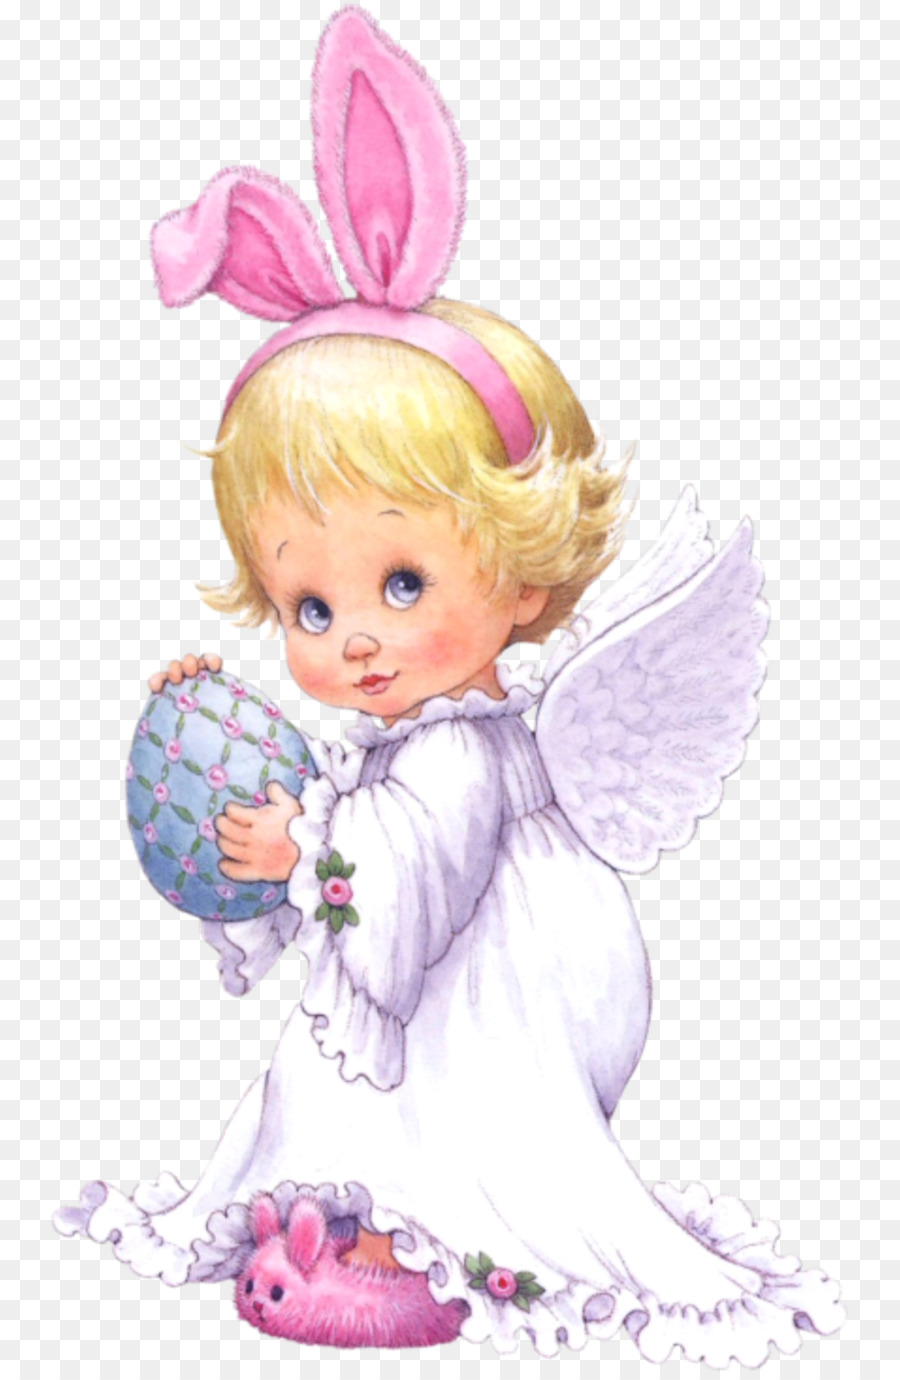 Immagine di giorno di Natale di grafica portatile rete angelo di Pasqua - angelo del png celeste del fumetto